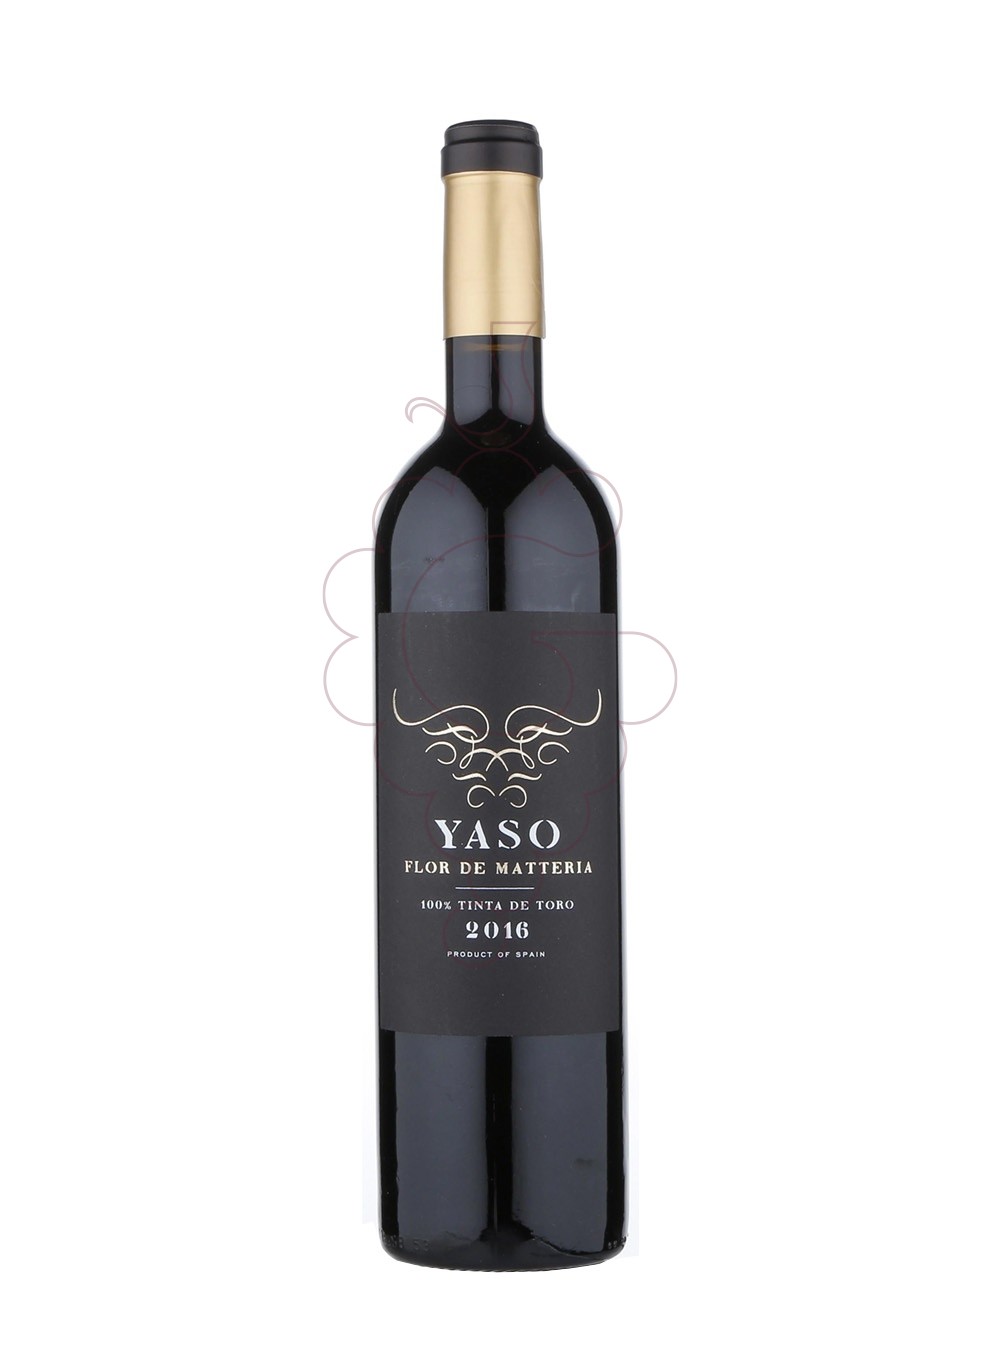 Photo Yaso flor de matteria 2016 vin rouge